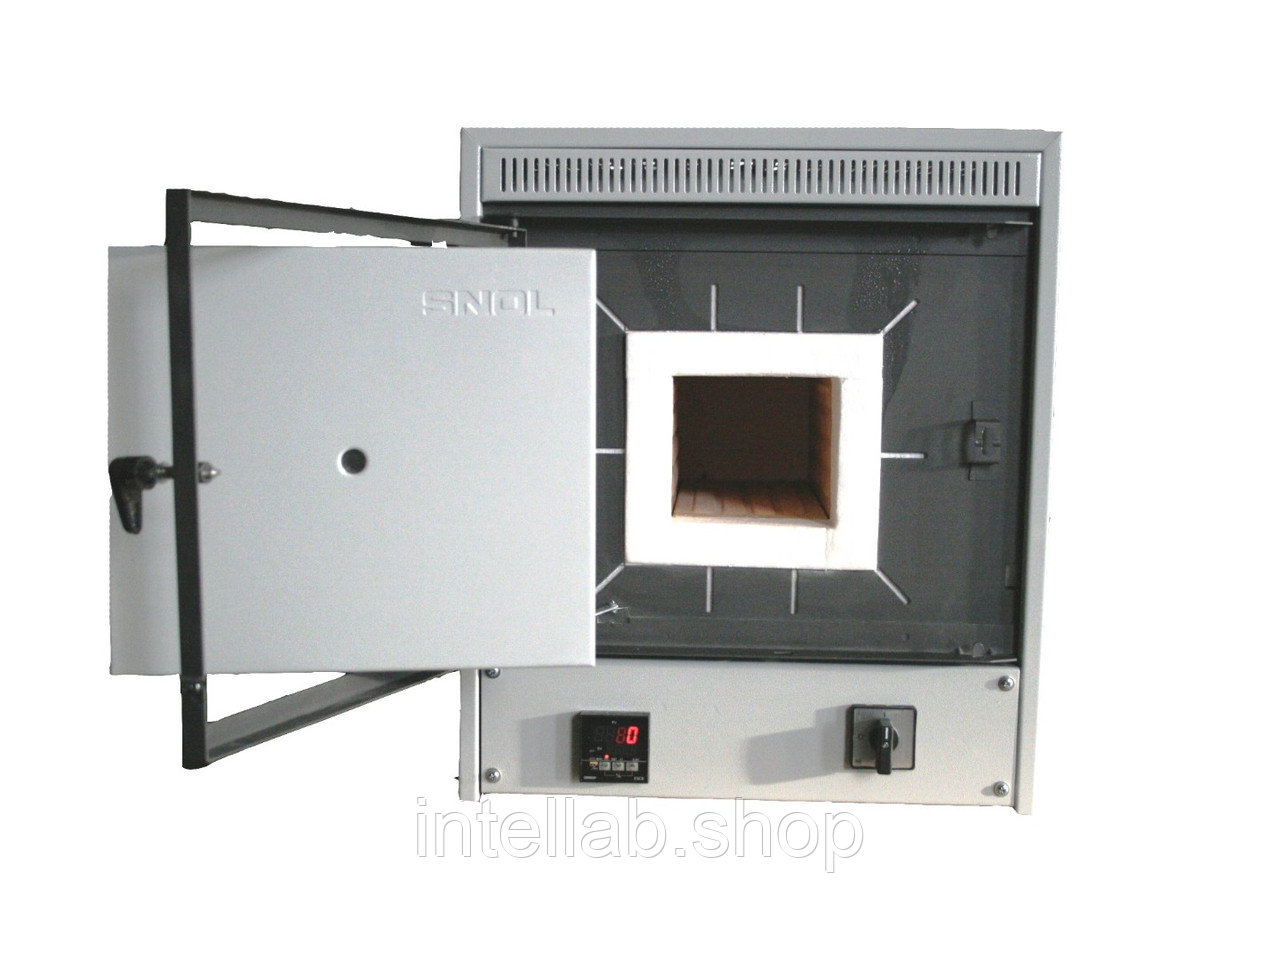 Электропечь сопротивления высокотемпературная лабораторная, тип SNOL, модель 4/1100 (LSC 01, 1100ºC, код: